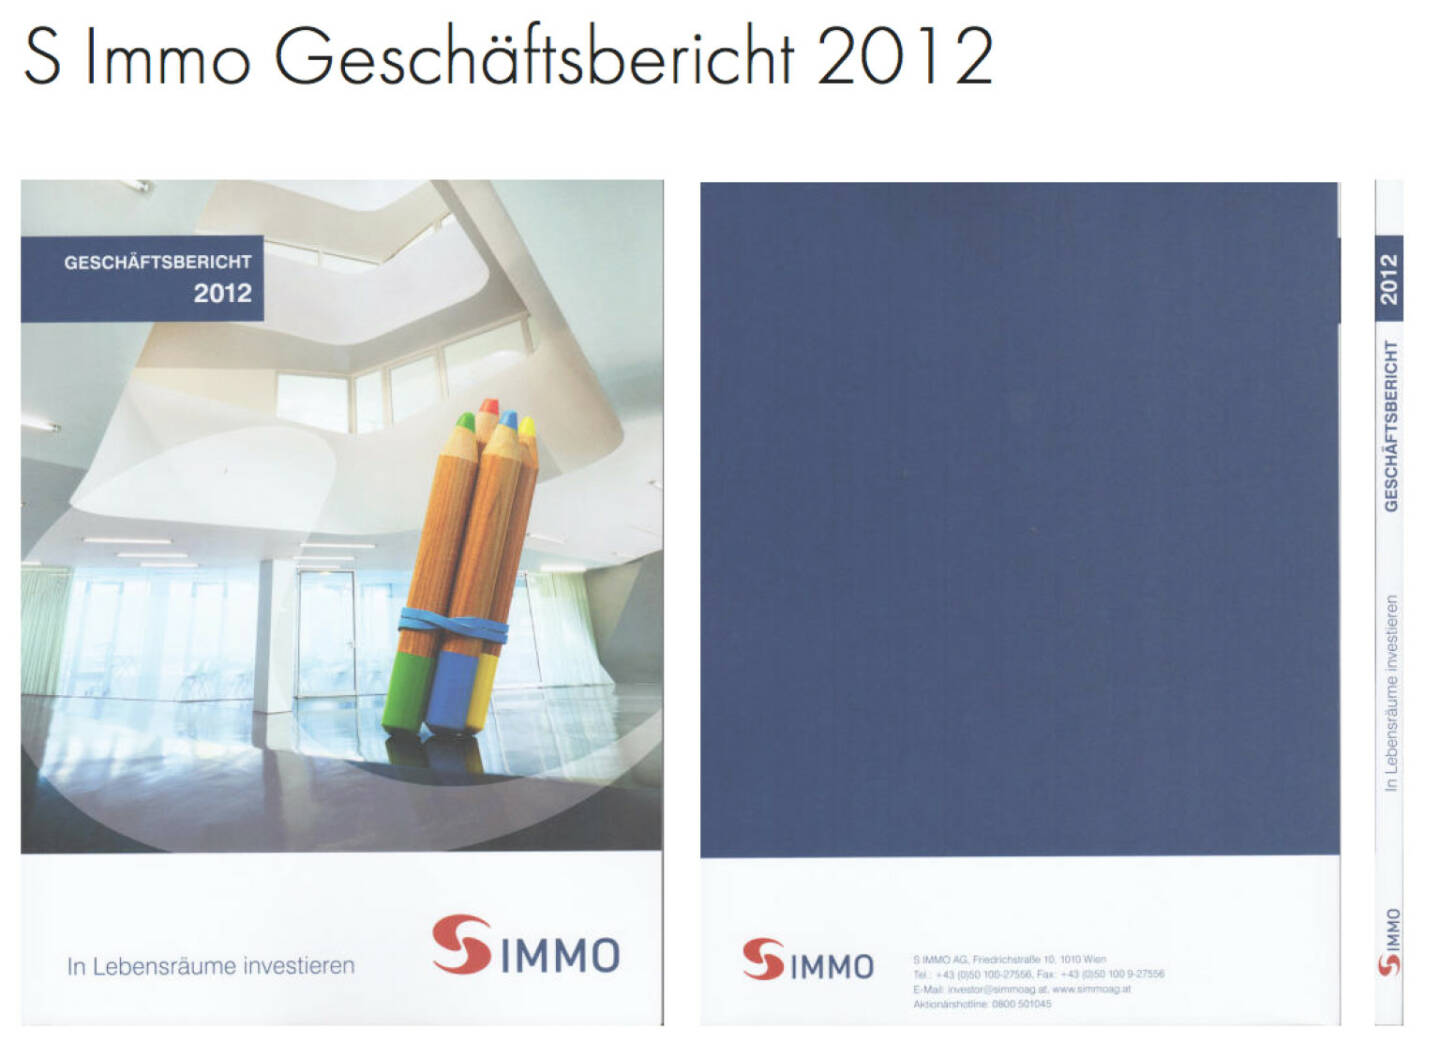 S Immo Geschäftsbericht 2012 http://josefchladek.com/companyreport/s_immo_geschaftsbericht_2012